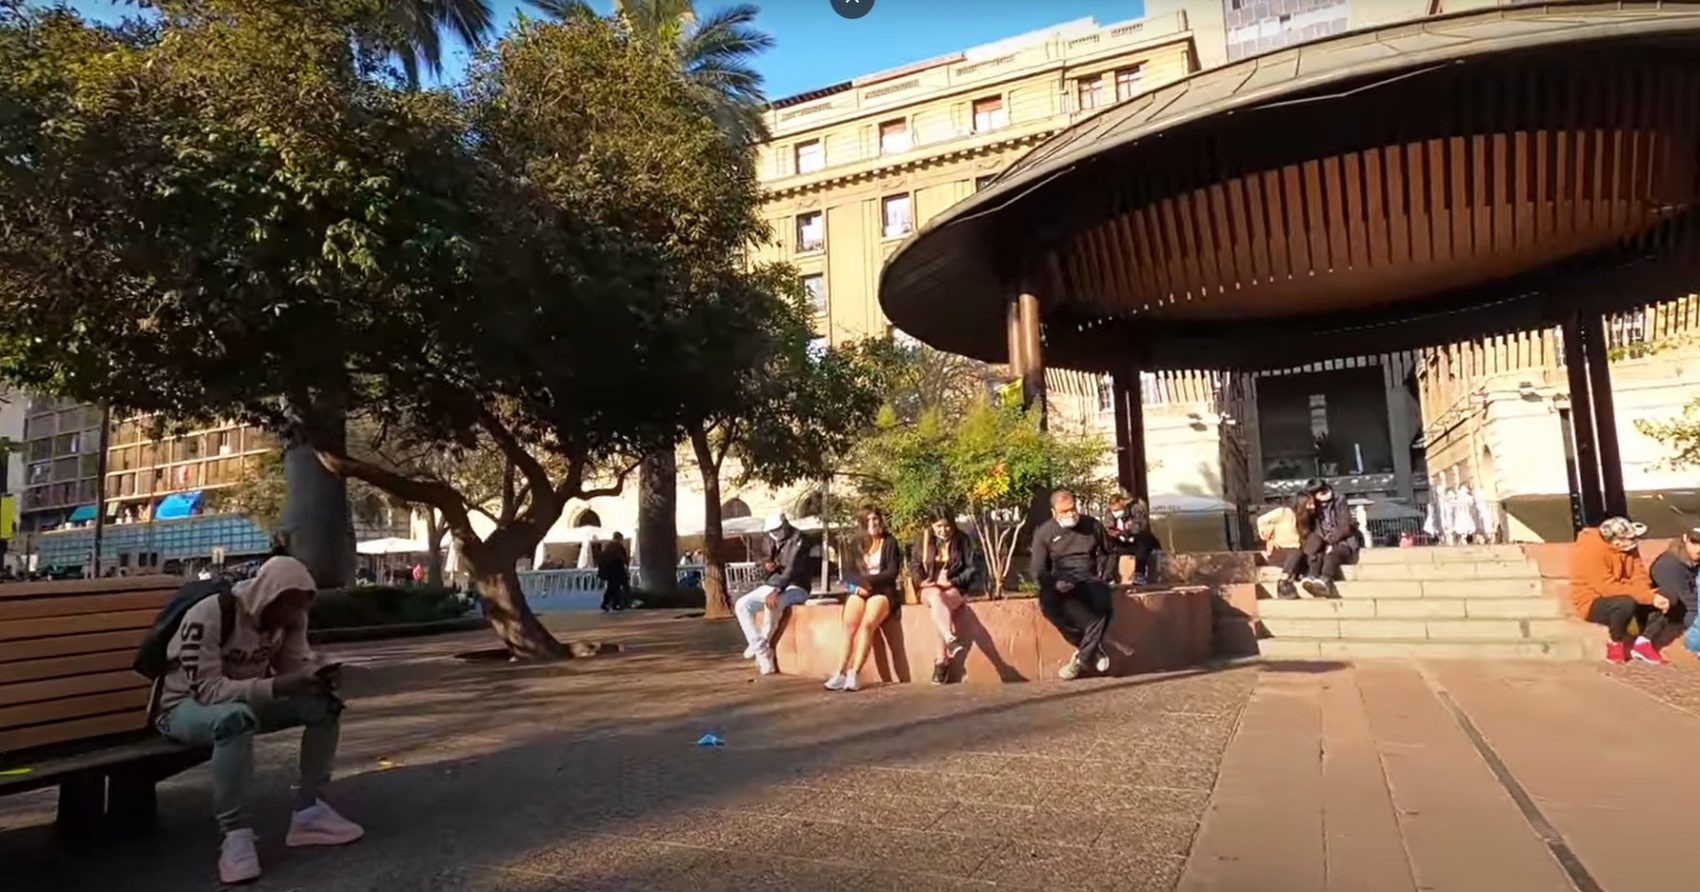 Trata de personas para prostitución en Plaza de Armas de Santiago: INDH se querelló contra los 10 involucrados